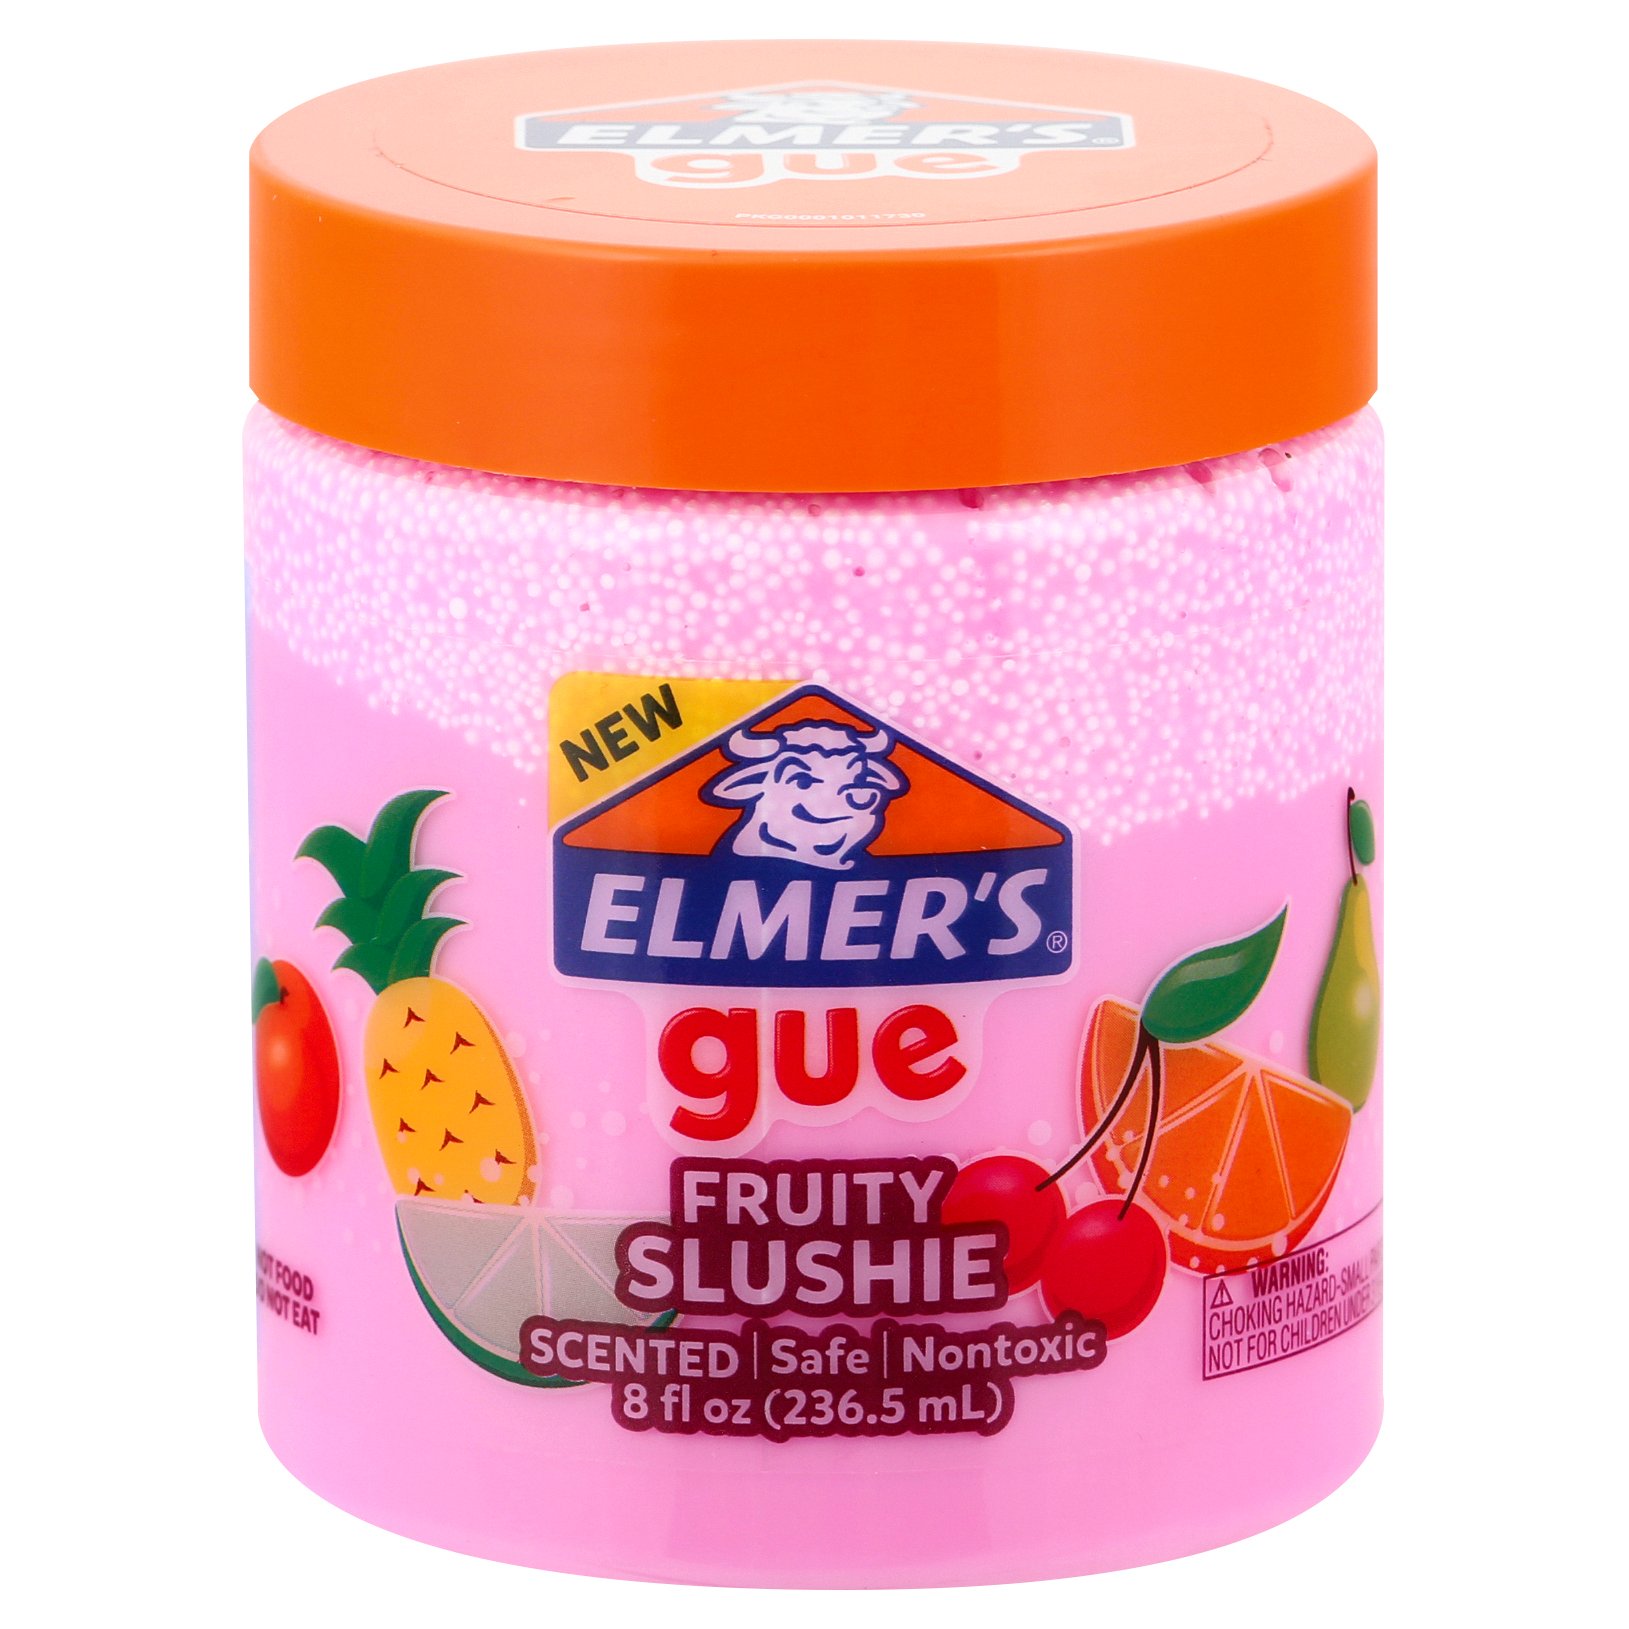 Elmer's Strawberry Donut Scented Gue - Shop Craft Basics at H-E-B